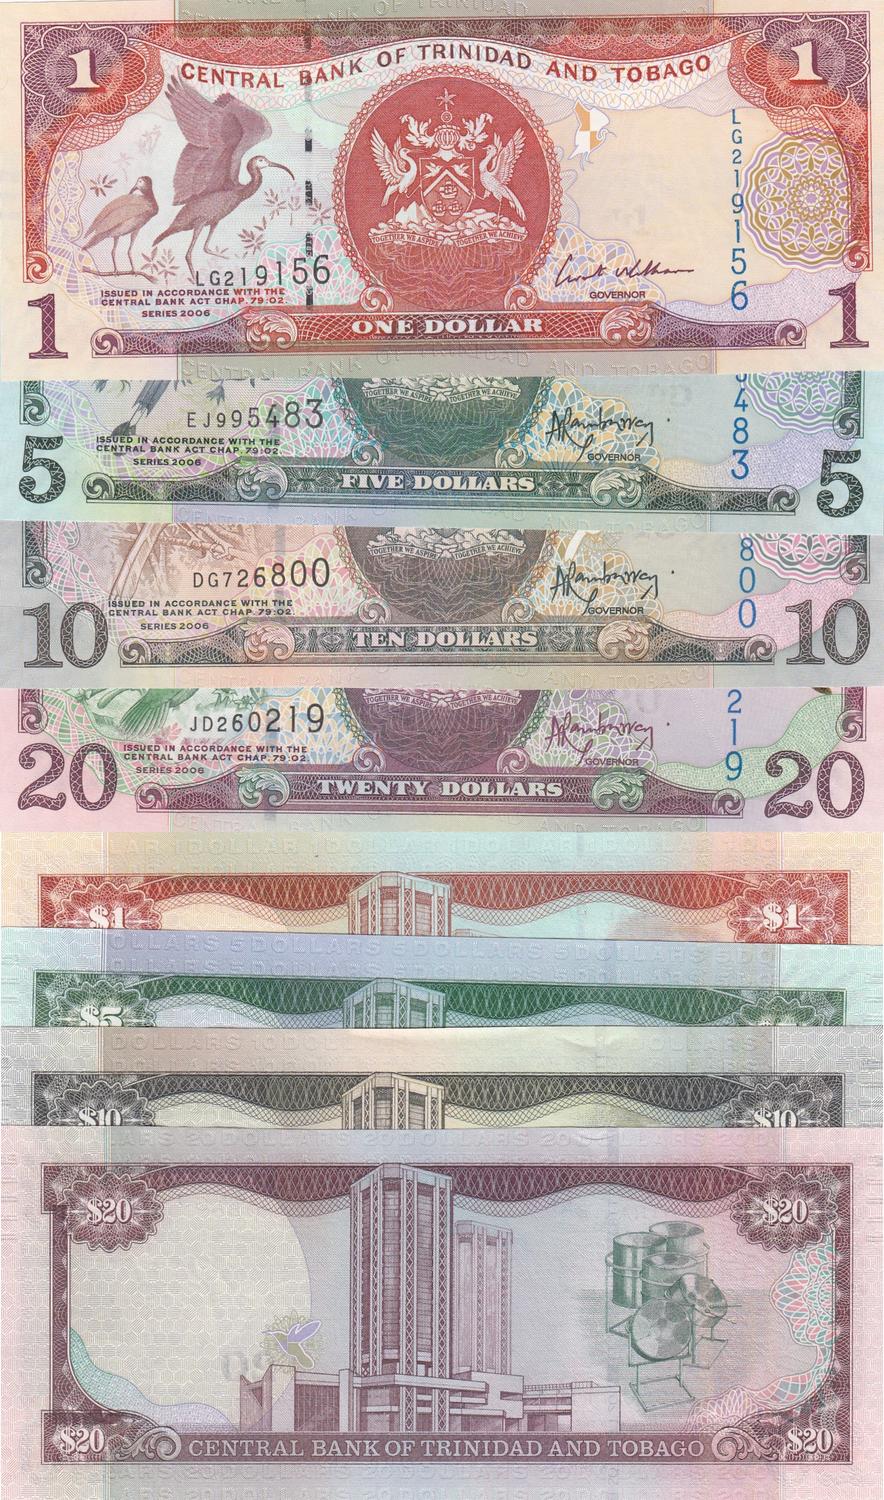 UNC 2006 Trinidad & Tobago 1 Dollar 2014 P46 banknote 